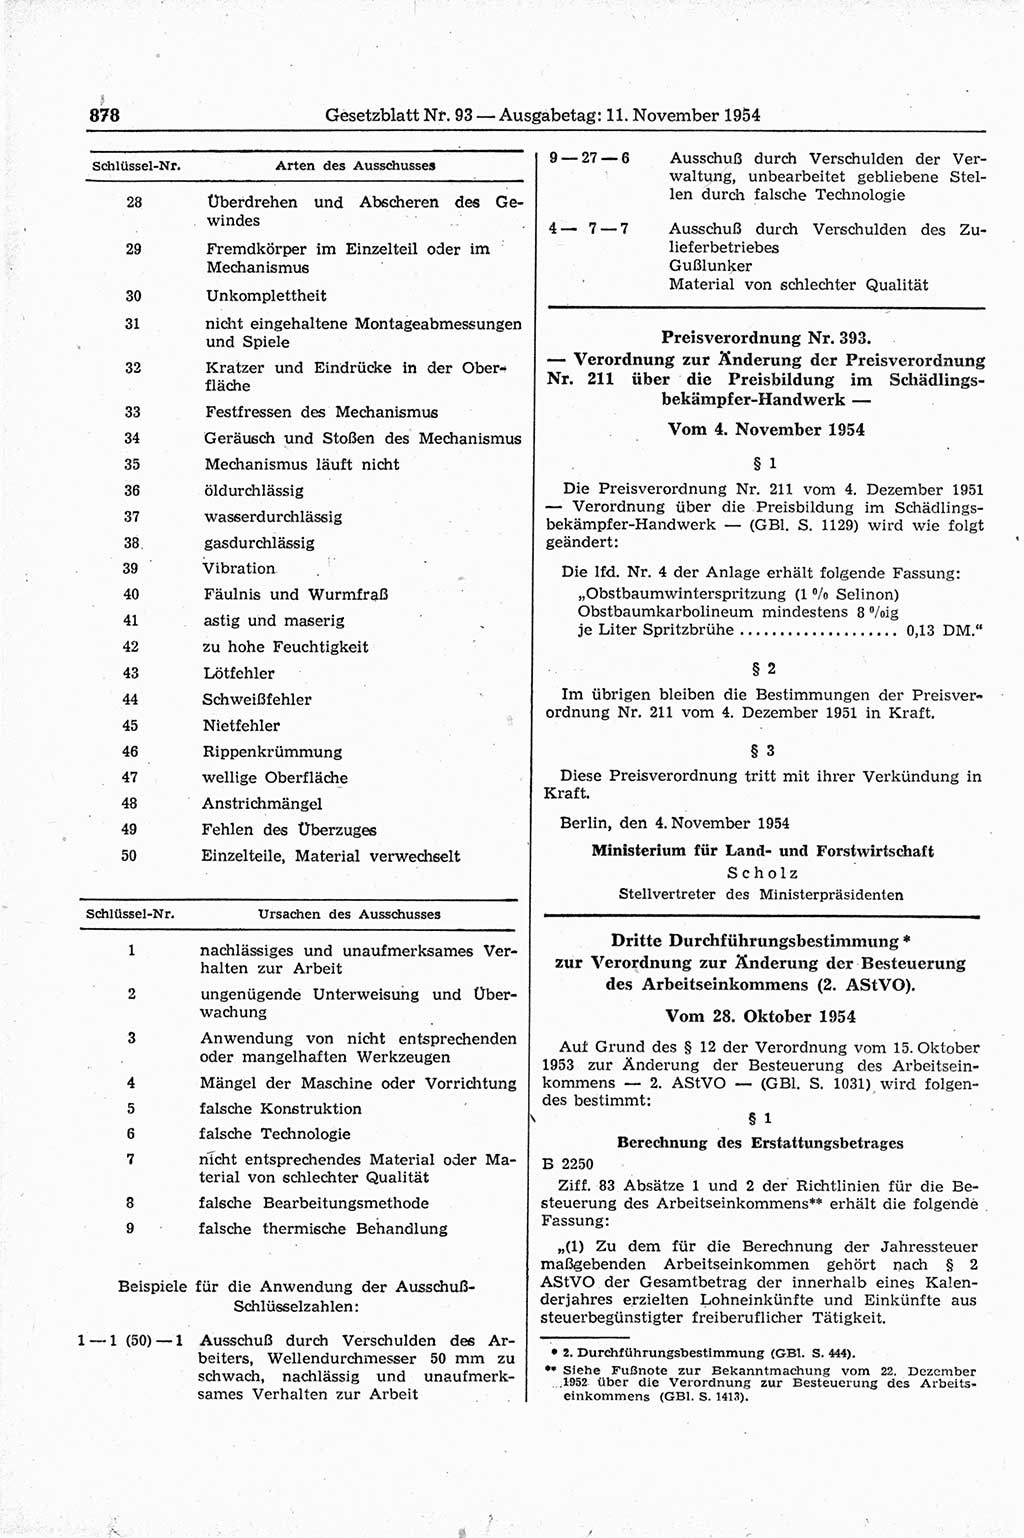 Gesetzblatt (GBl.) der Deutschen Demokratischen Republik (DDR) 1954, Seite 878 (GBl. DDR 1954, S. 878)